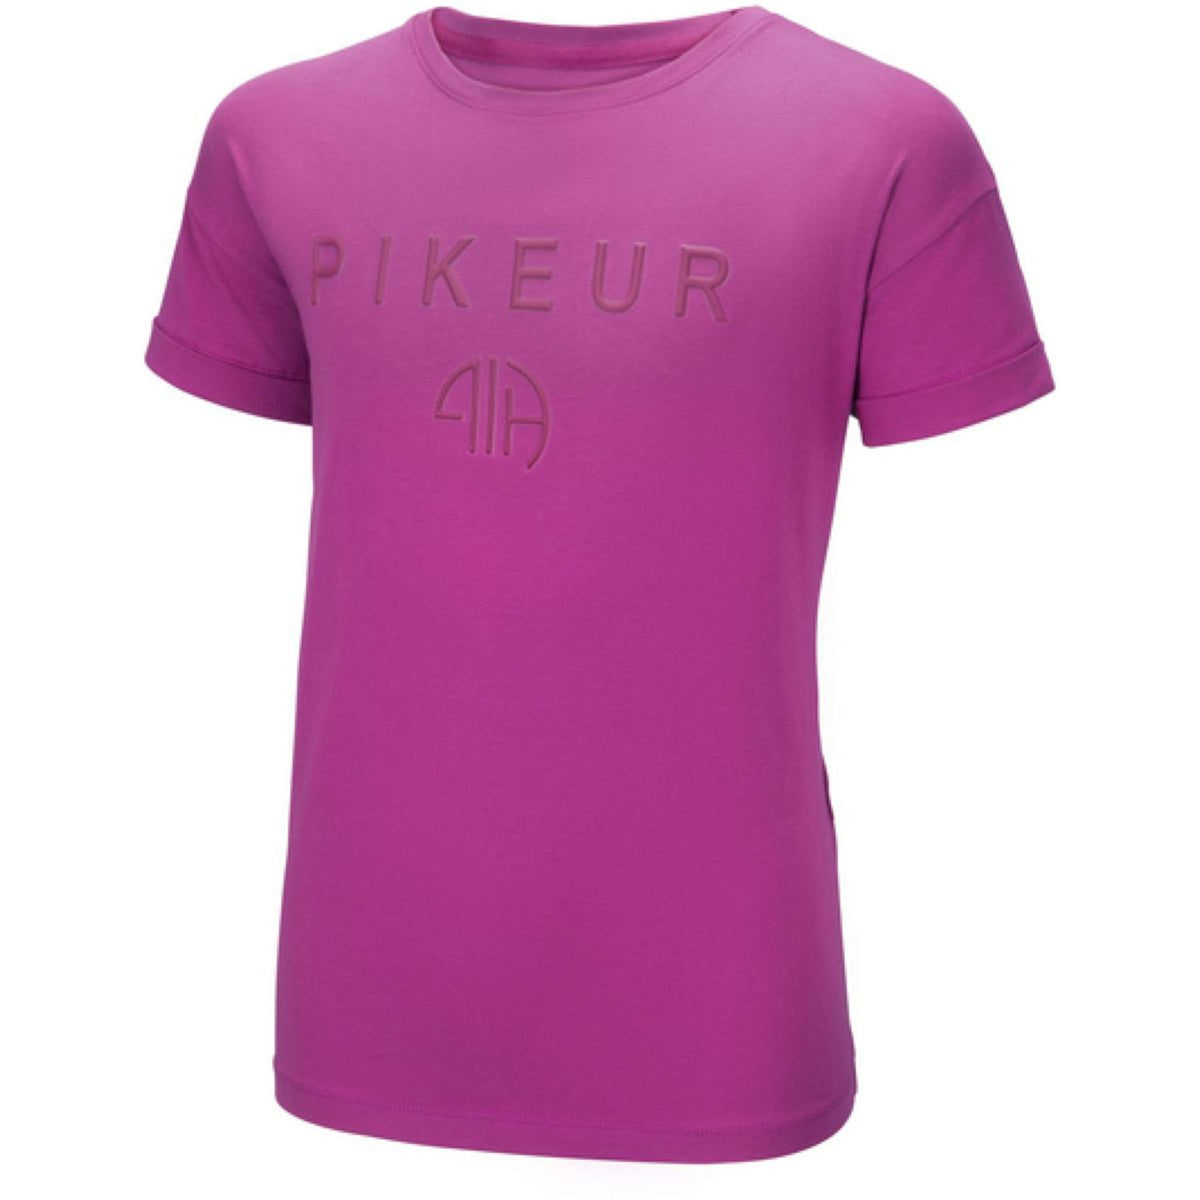 Pikeur Shirt Tiene Hot Pink